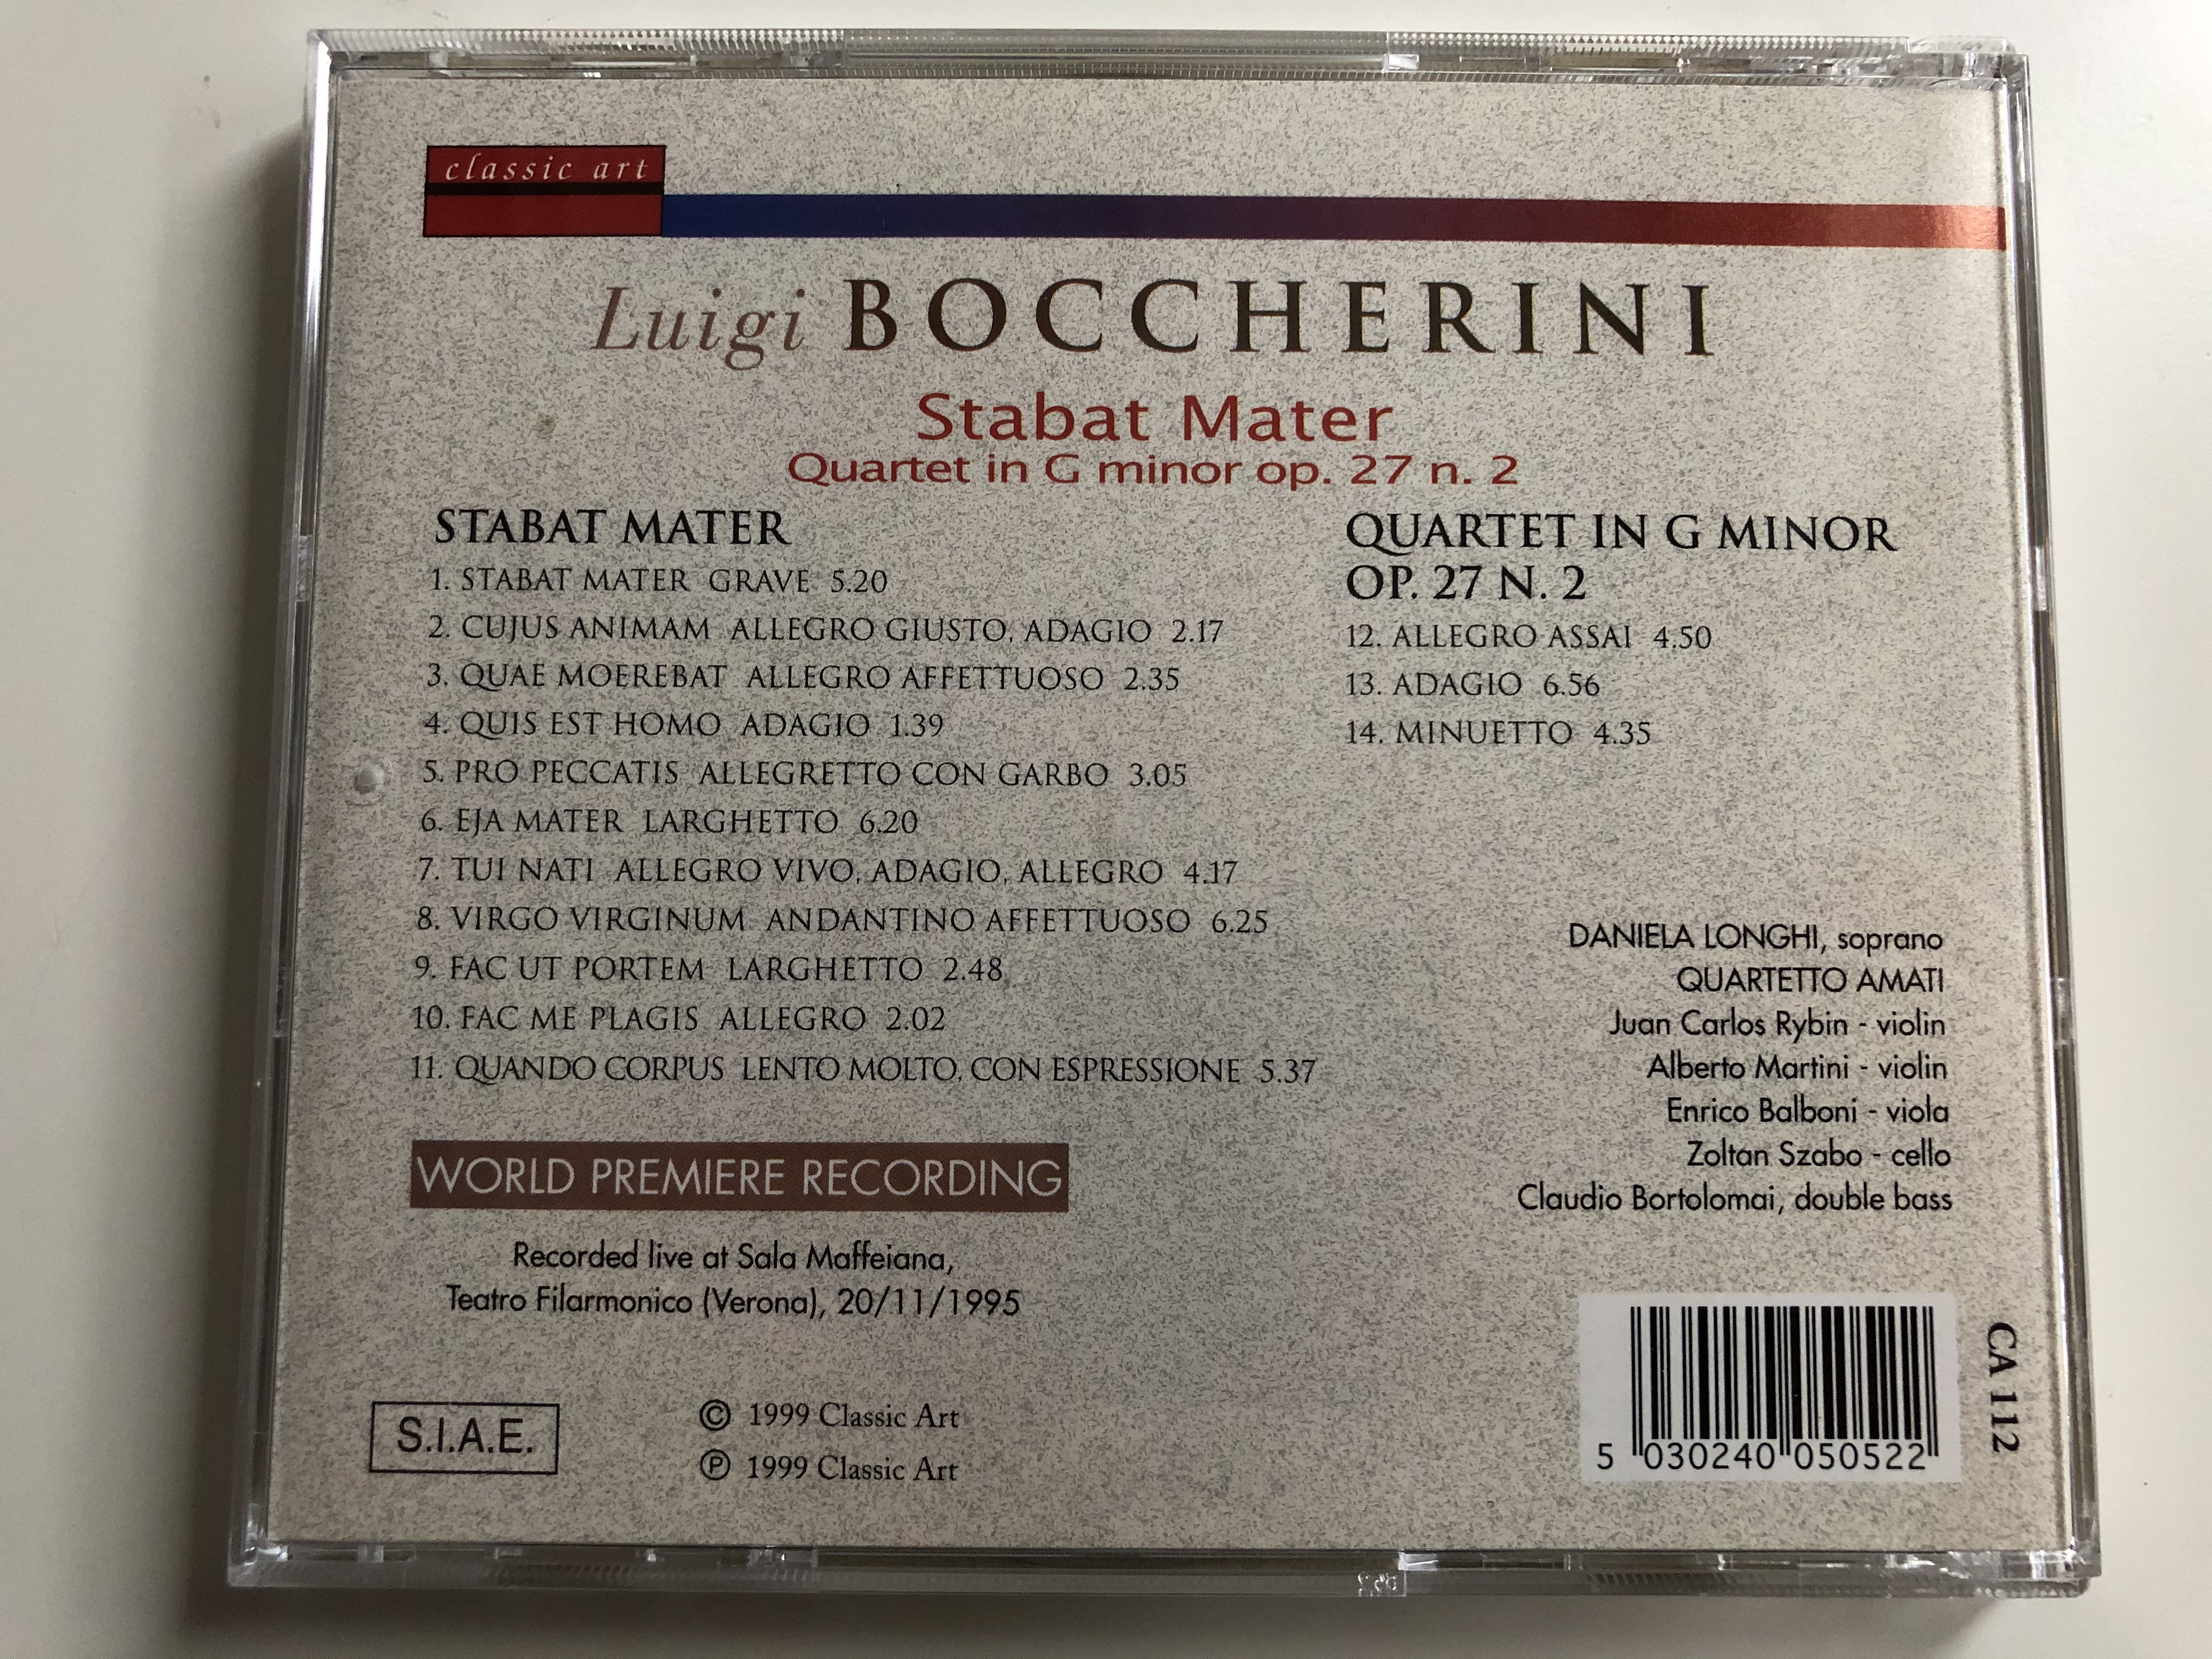 luigi-boccherini-stabat-mater-quartet-in-g-minor-op.-27-n.-2-classic-art-audio-cd-1999-ca-112-4-.jpg